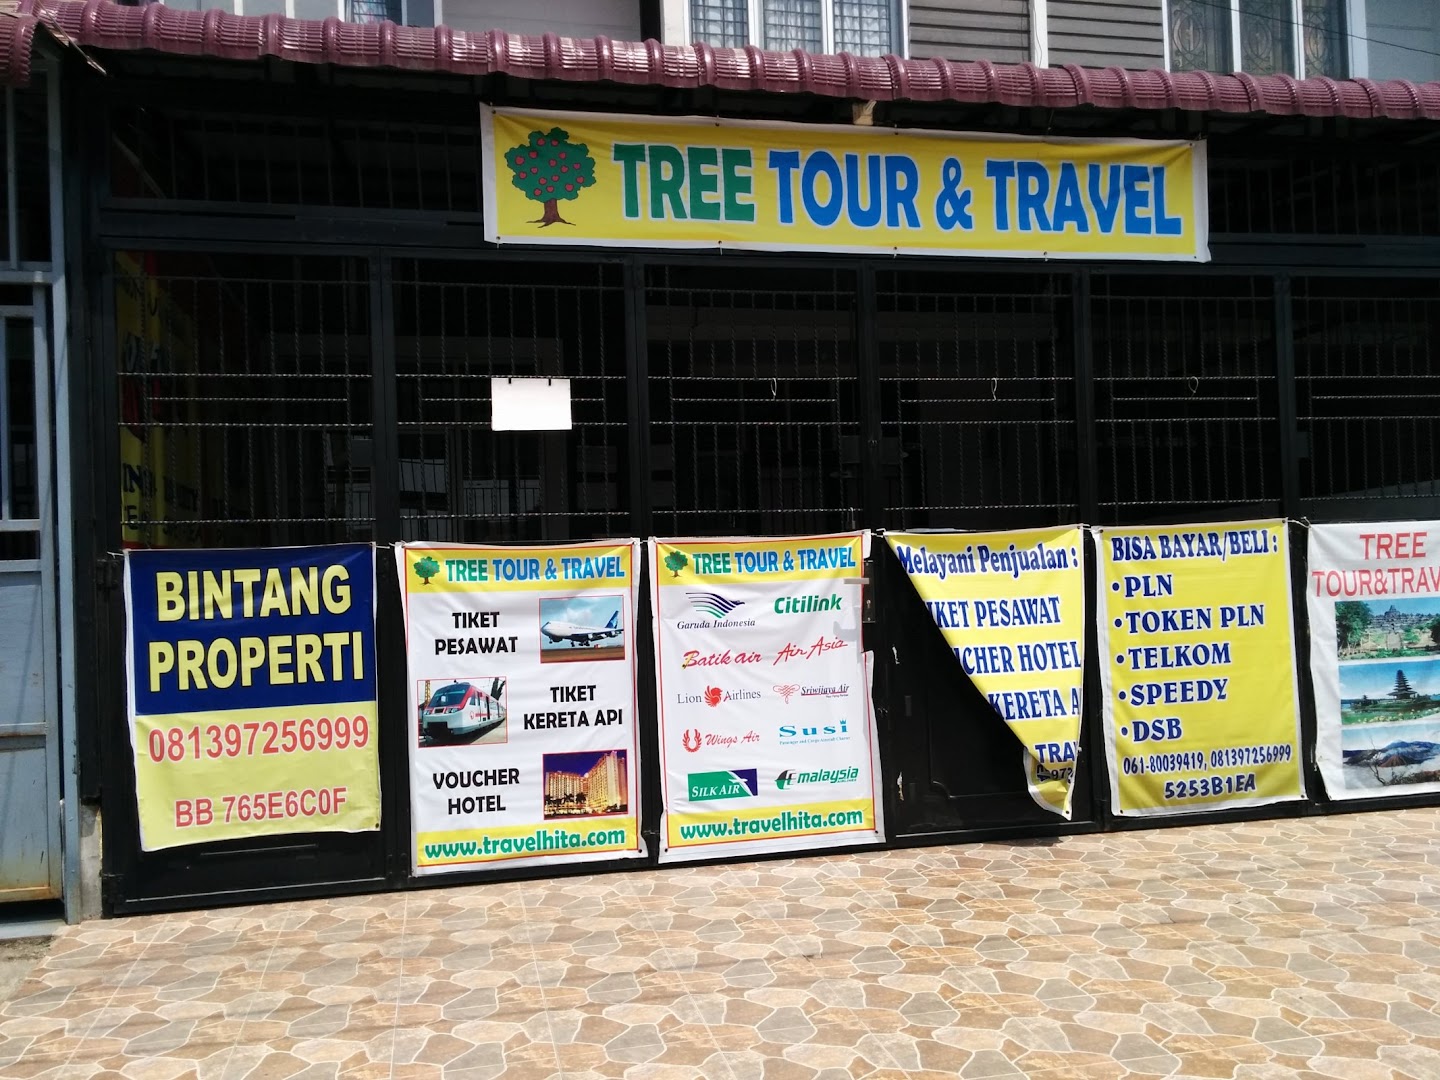 Tree Tour & Travel Photo